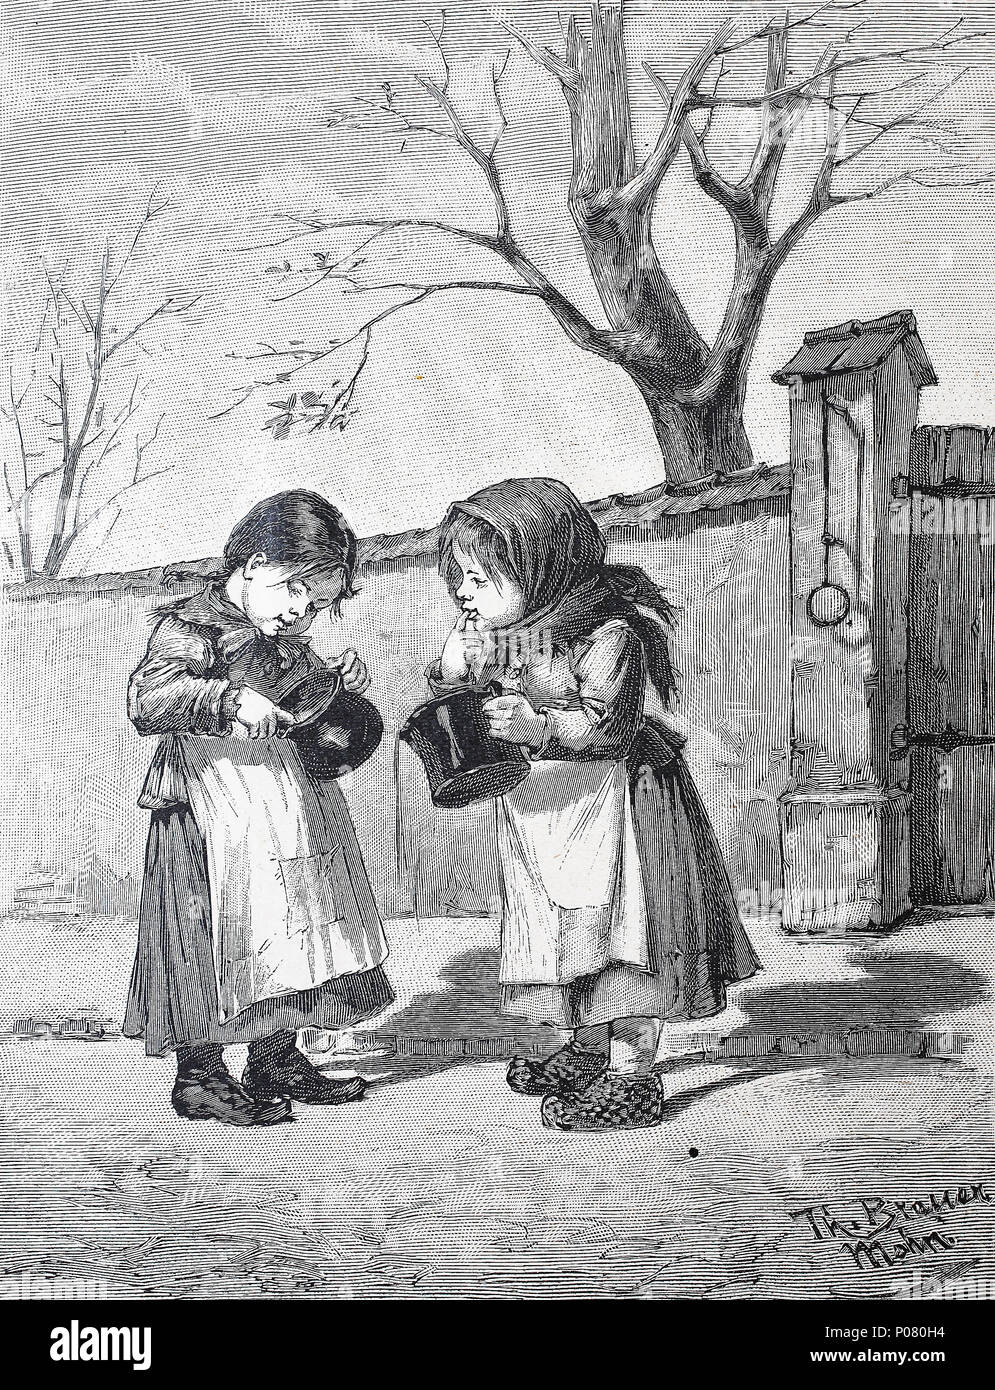 Kinder lecken Kochtöpfe, Kinder beim Auslecken von Kochtöpfen, digital verbesserte Reproduktion eines Originalabdrucks aus dem Jahr 1881 Stockfoto